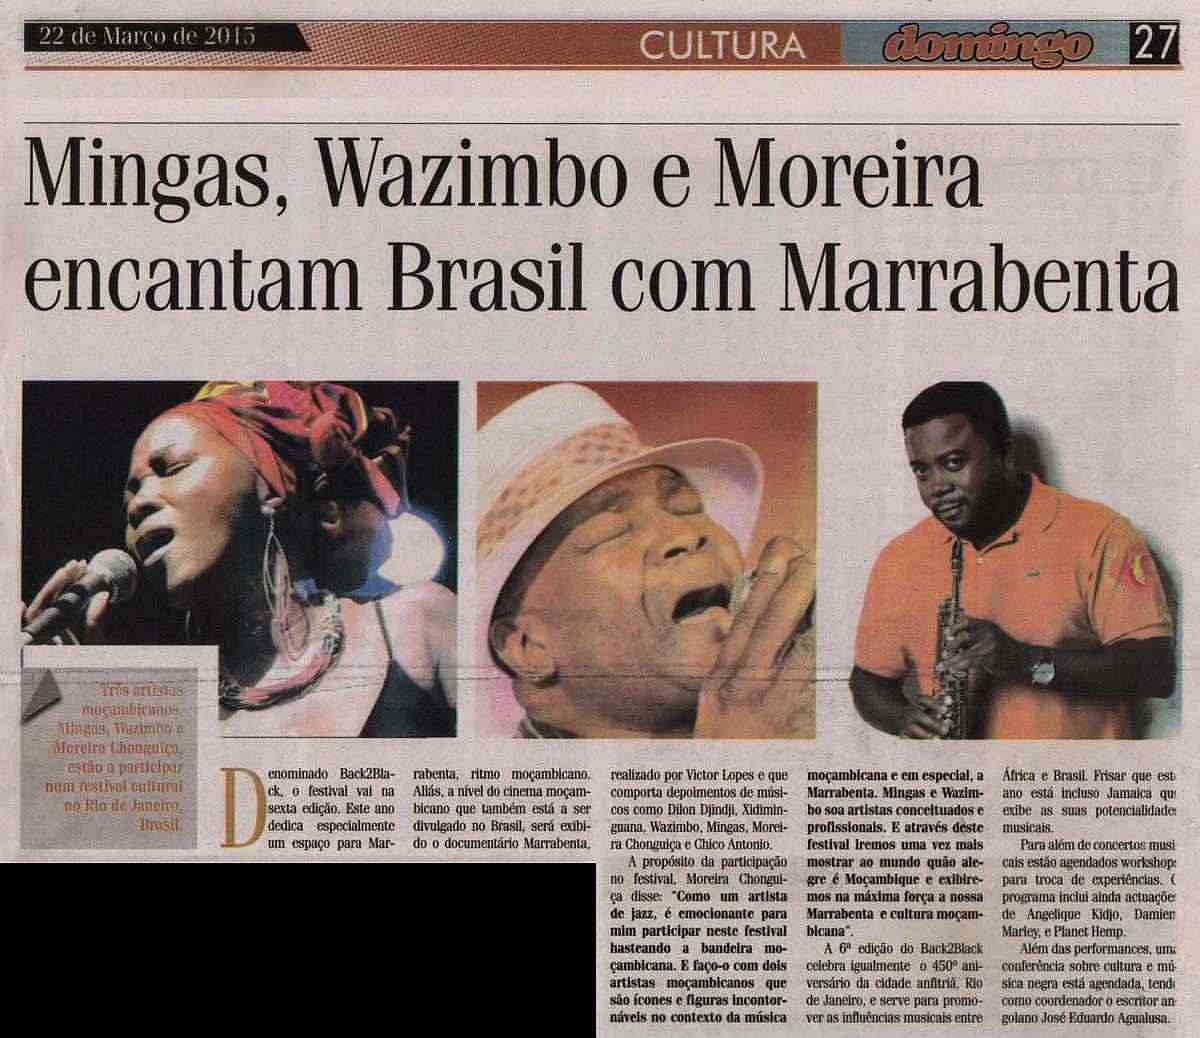 'Domingo - Cultura', March 22, 2015, Page 27: Mingas at Back2Black Festival in Rio de Janeiro, Brazil, March 21, 2015